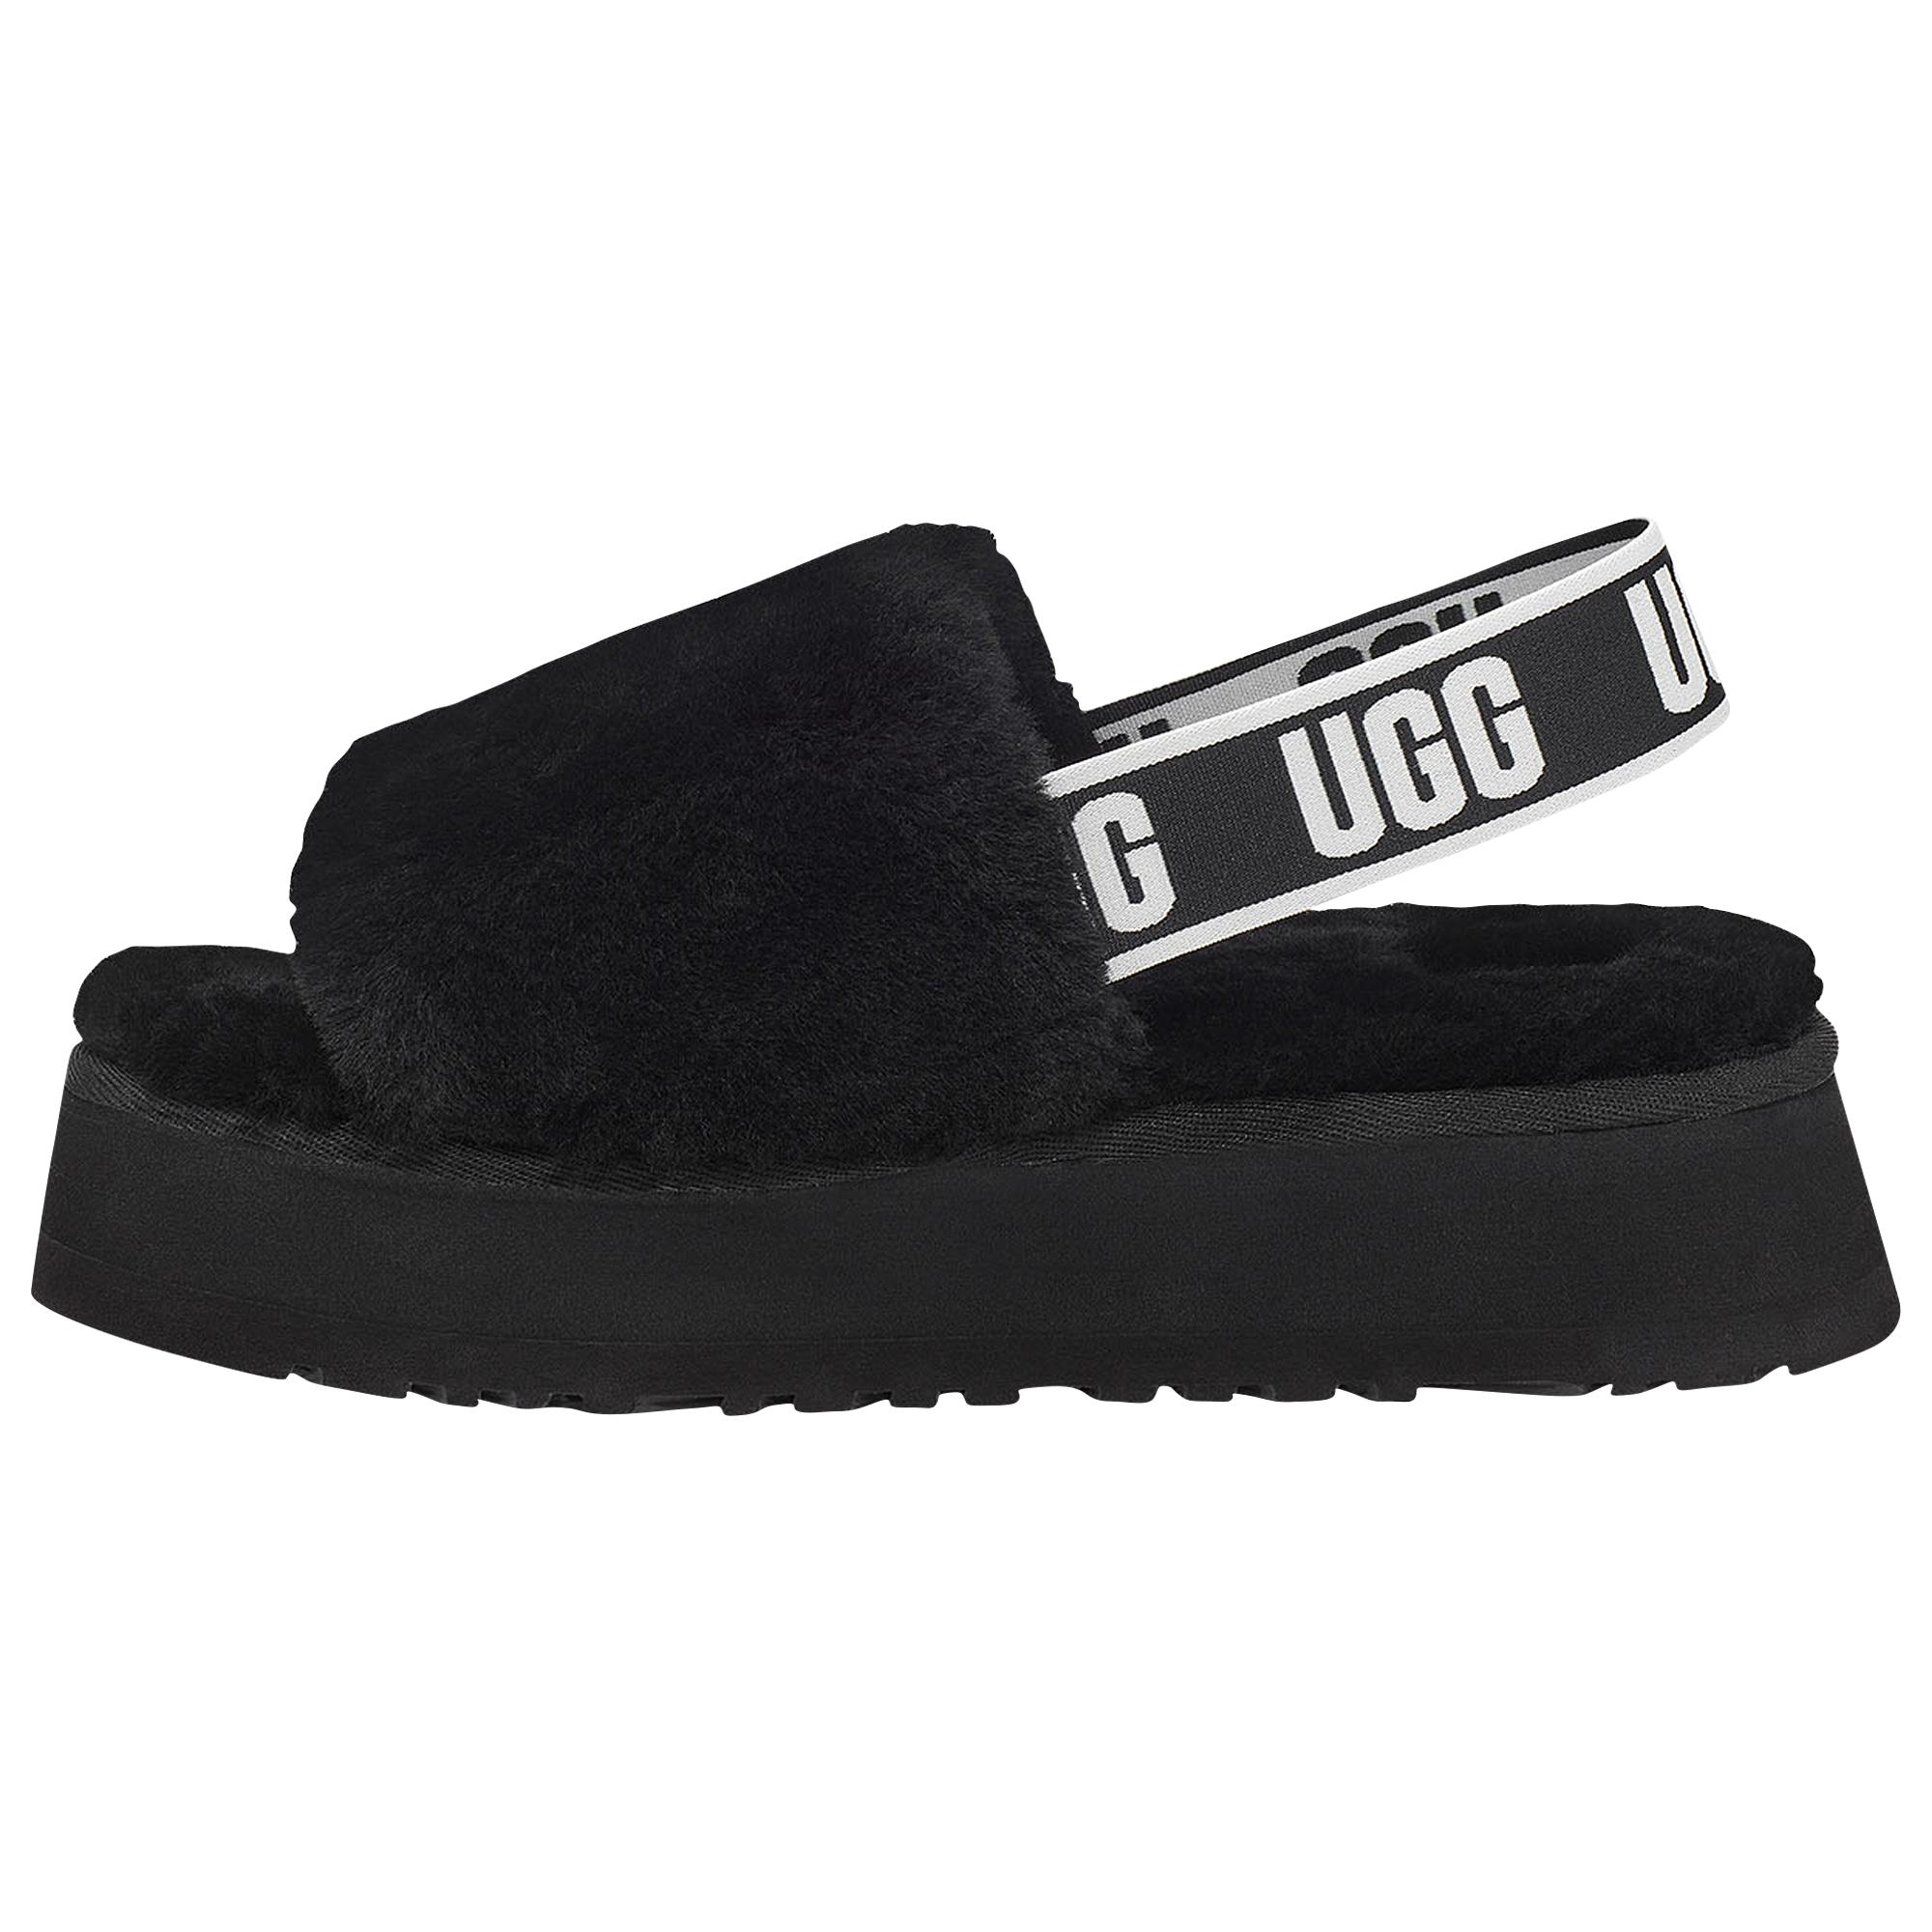 UGG Rubber Disco Slide - Shoes in Black/Black (Black) - Lyst